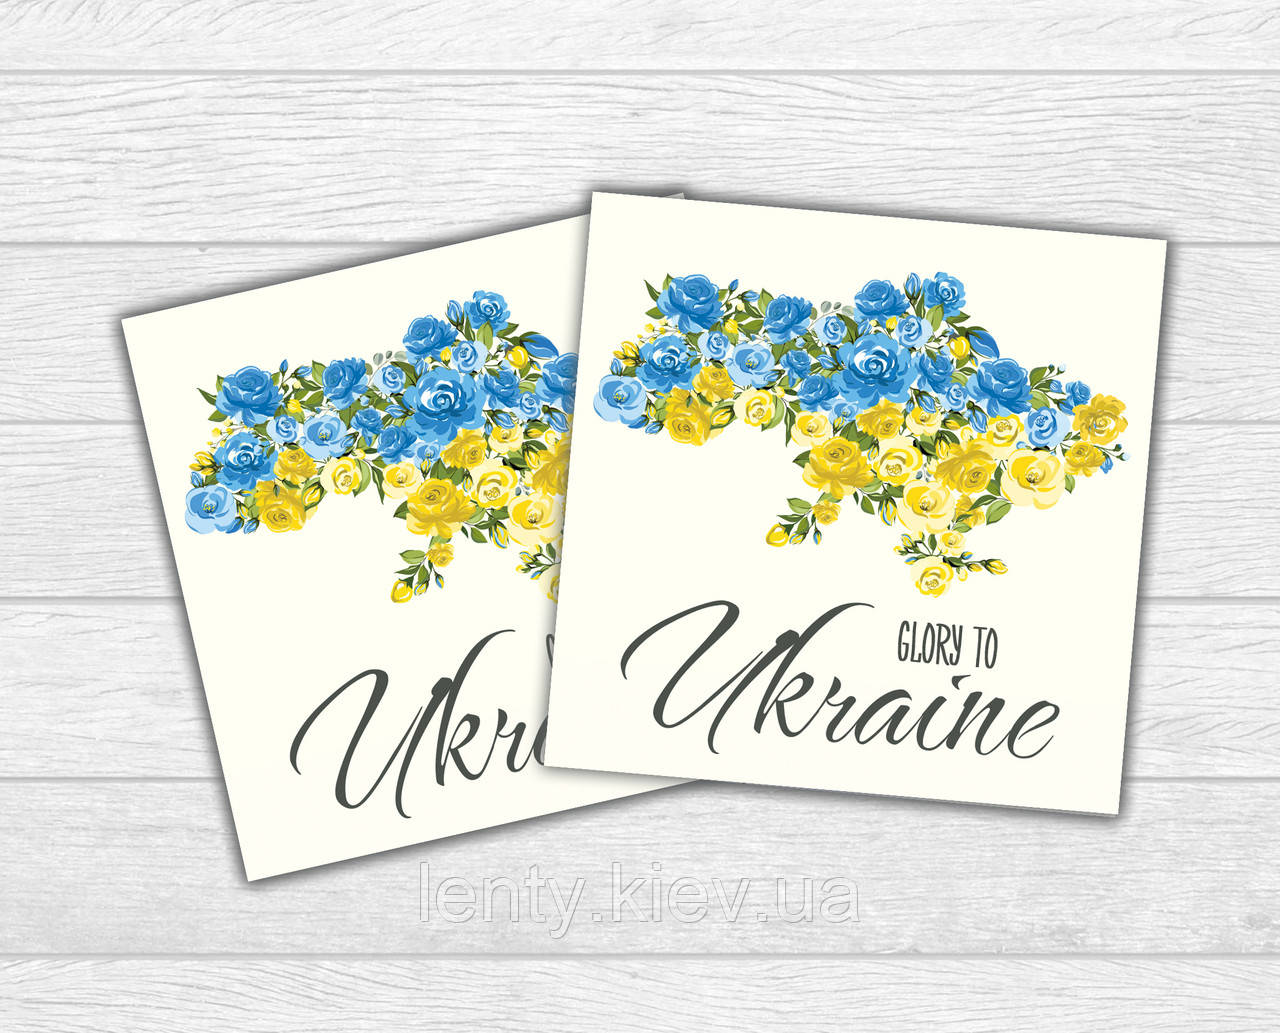 Міні листівка патріотична "Карта України троянди. Glory to Ukraine" для подарунків, квітів, букетів (бірочка)